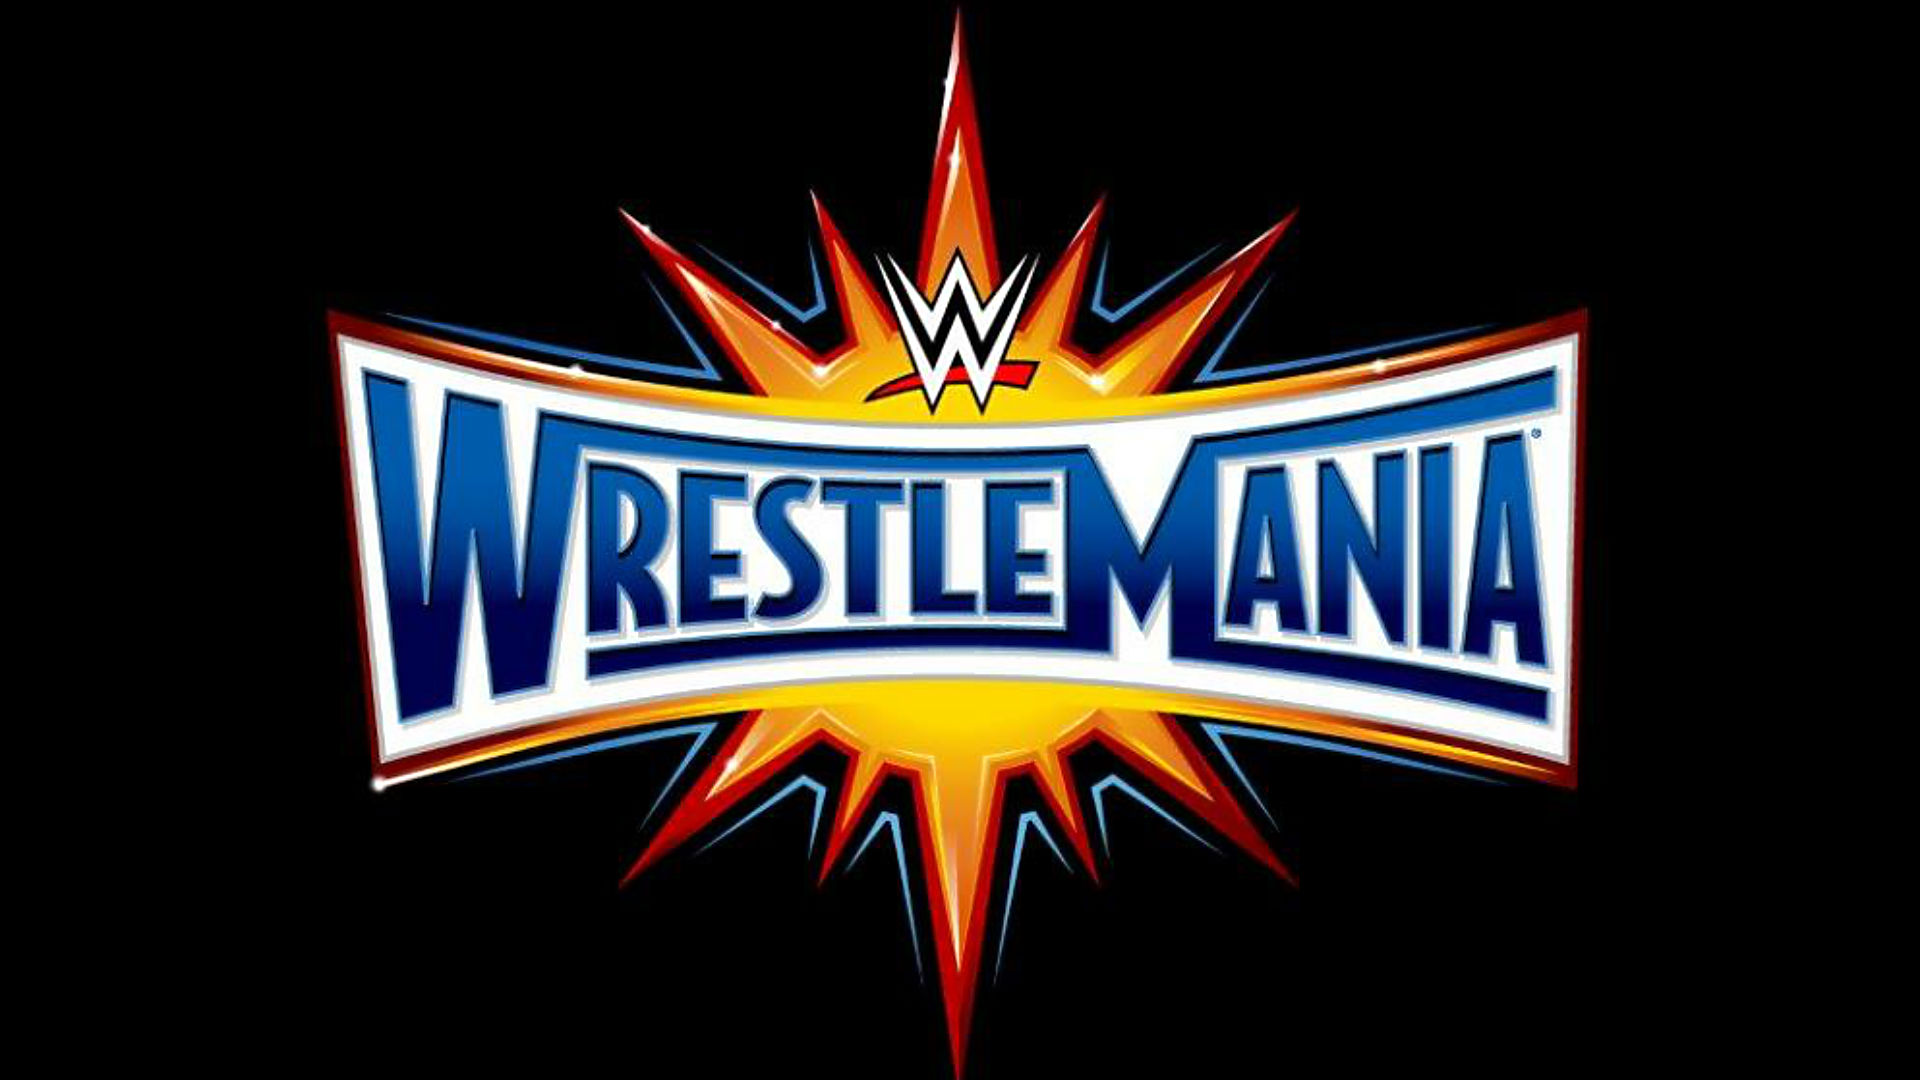 WrestleMania XXXIII